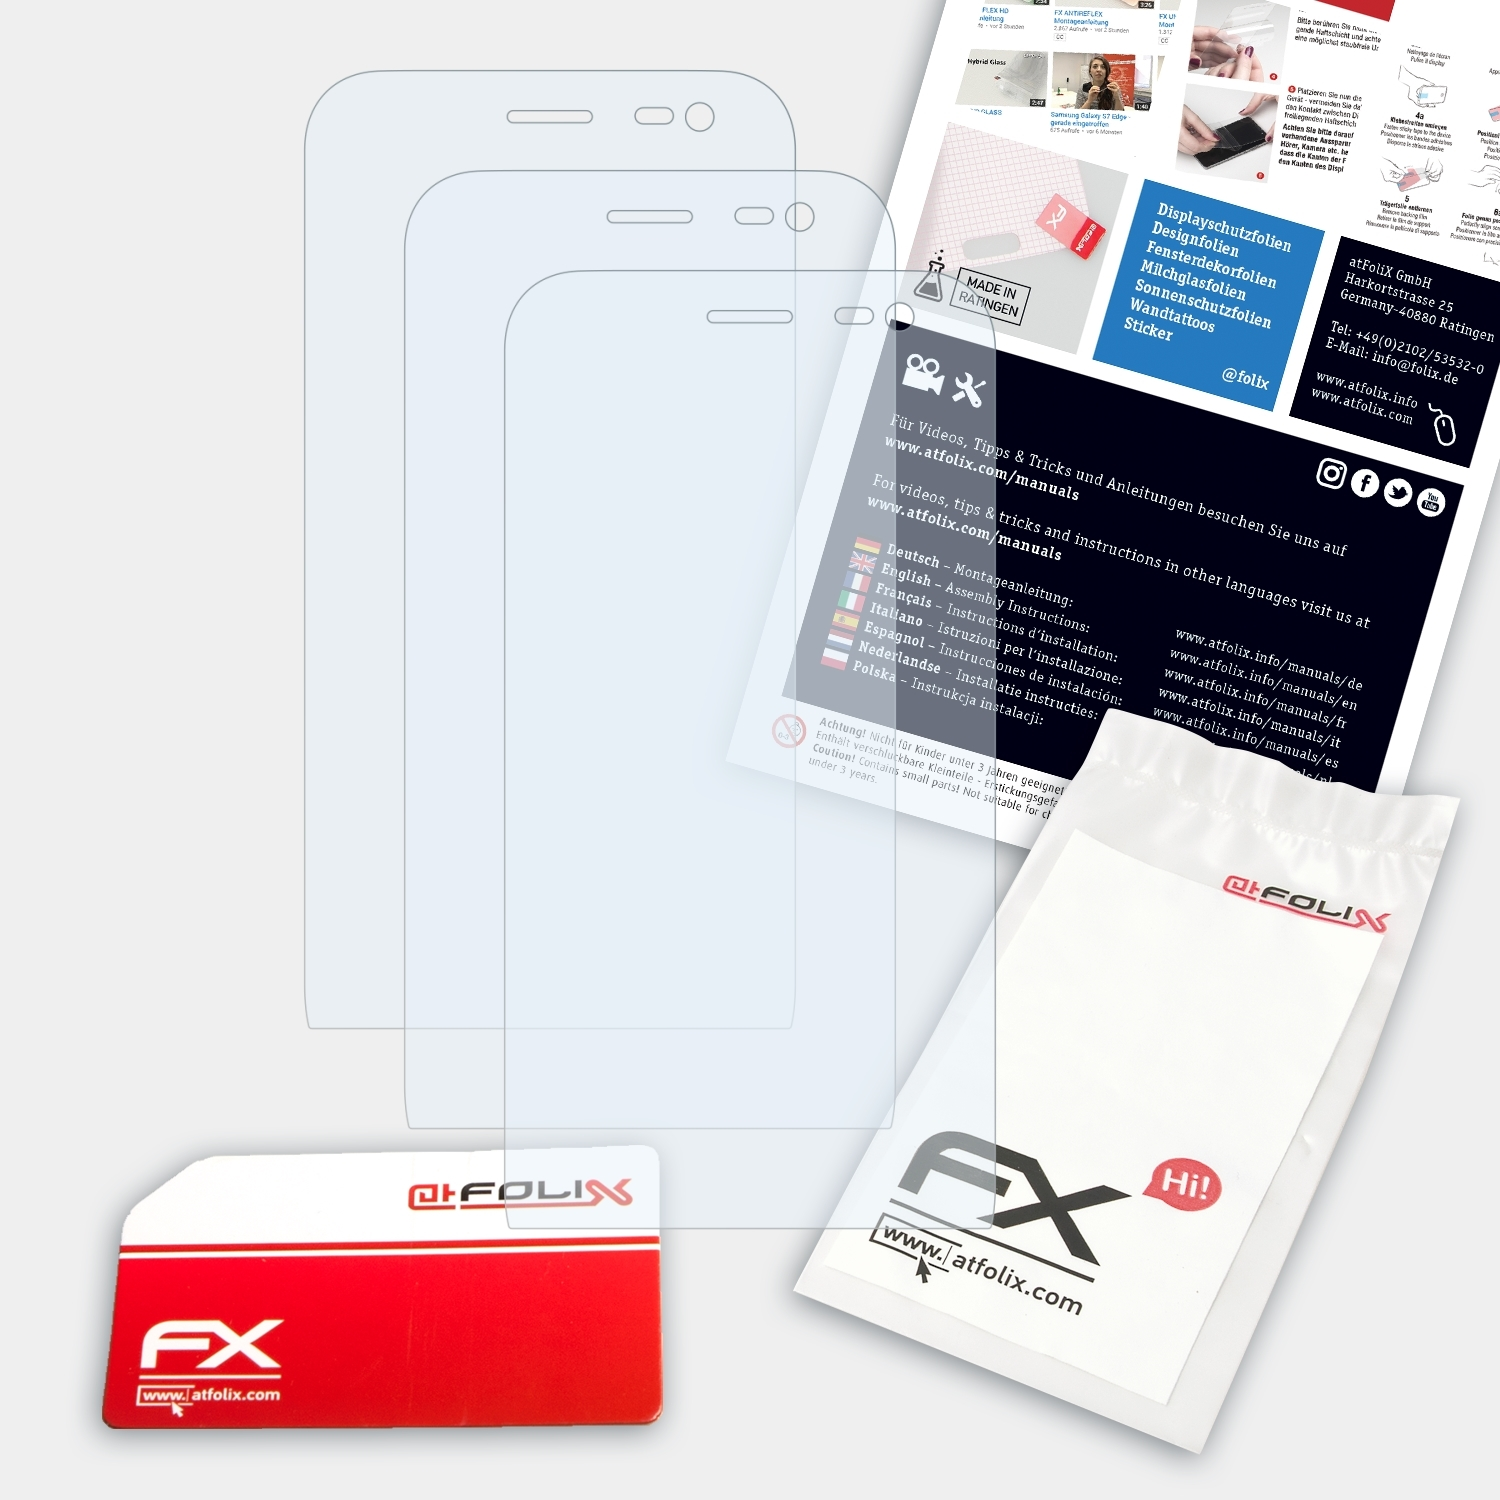 (ZX551ML)) 3x FX-Clear Zoom Displayschutz(für ATFOLIX Asus ZenFone